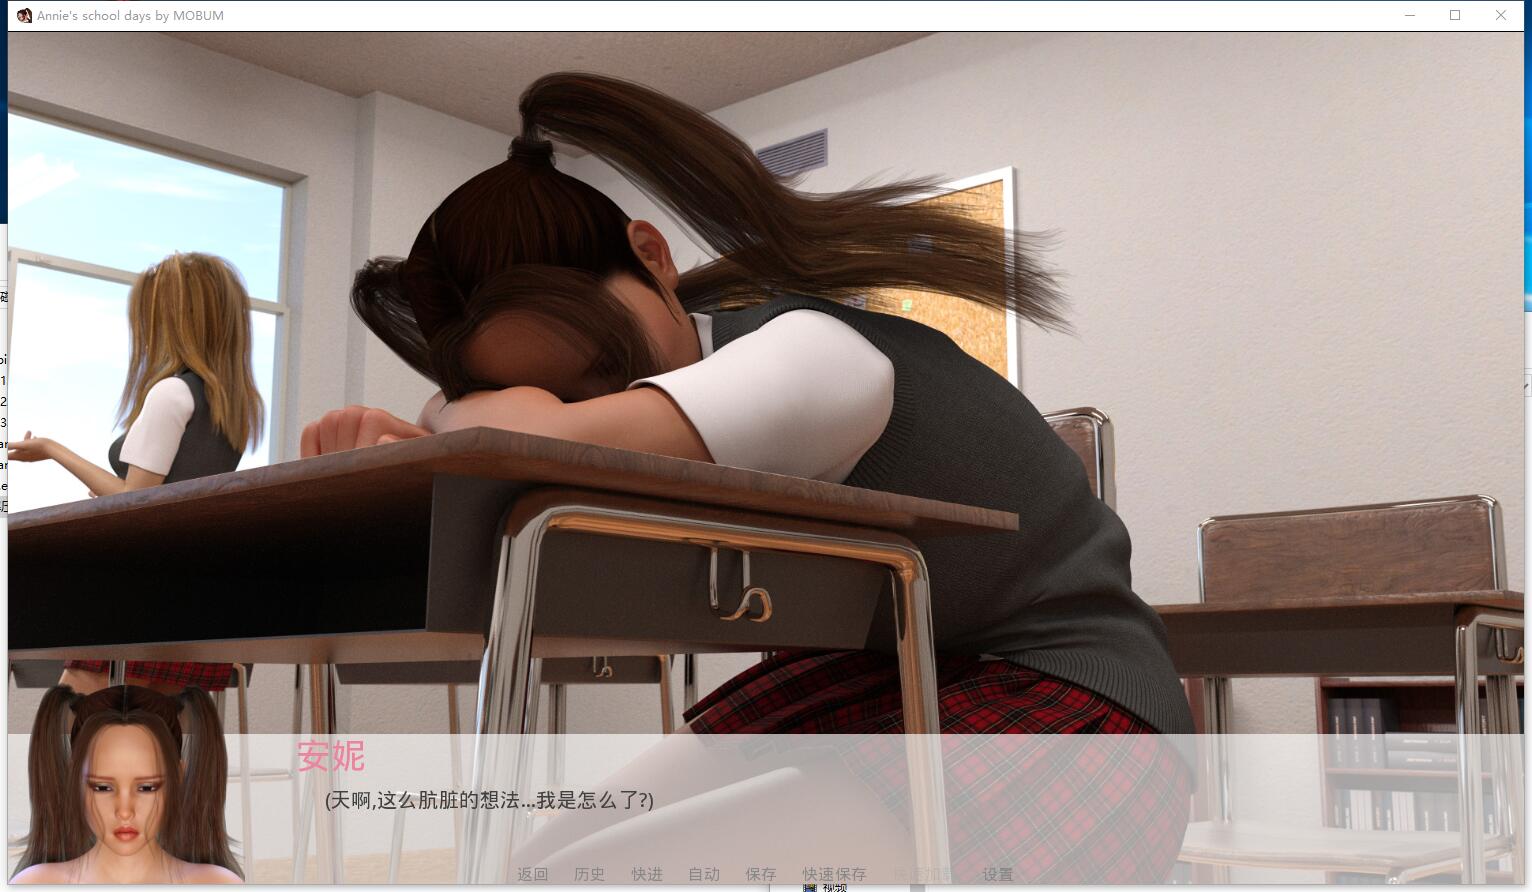 安妮的学生时代 V0.7 把学校变成后宫吧！欧美3D游戏SLG动态CG精翻汉化硬盘版